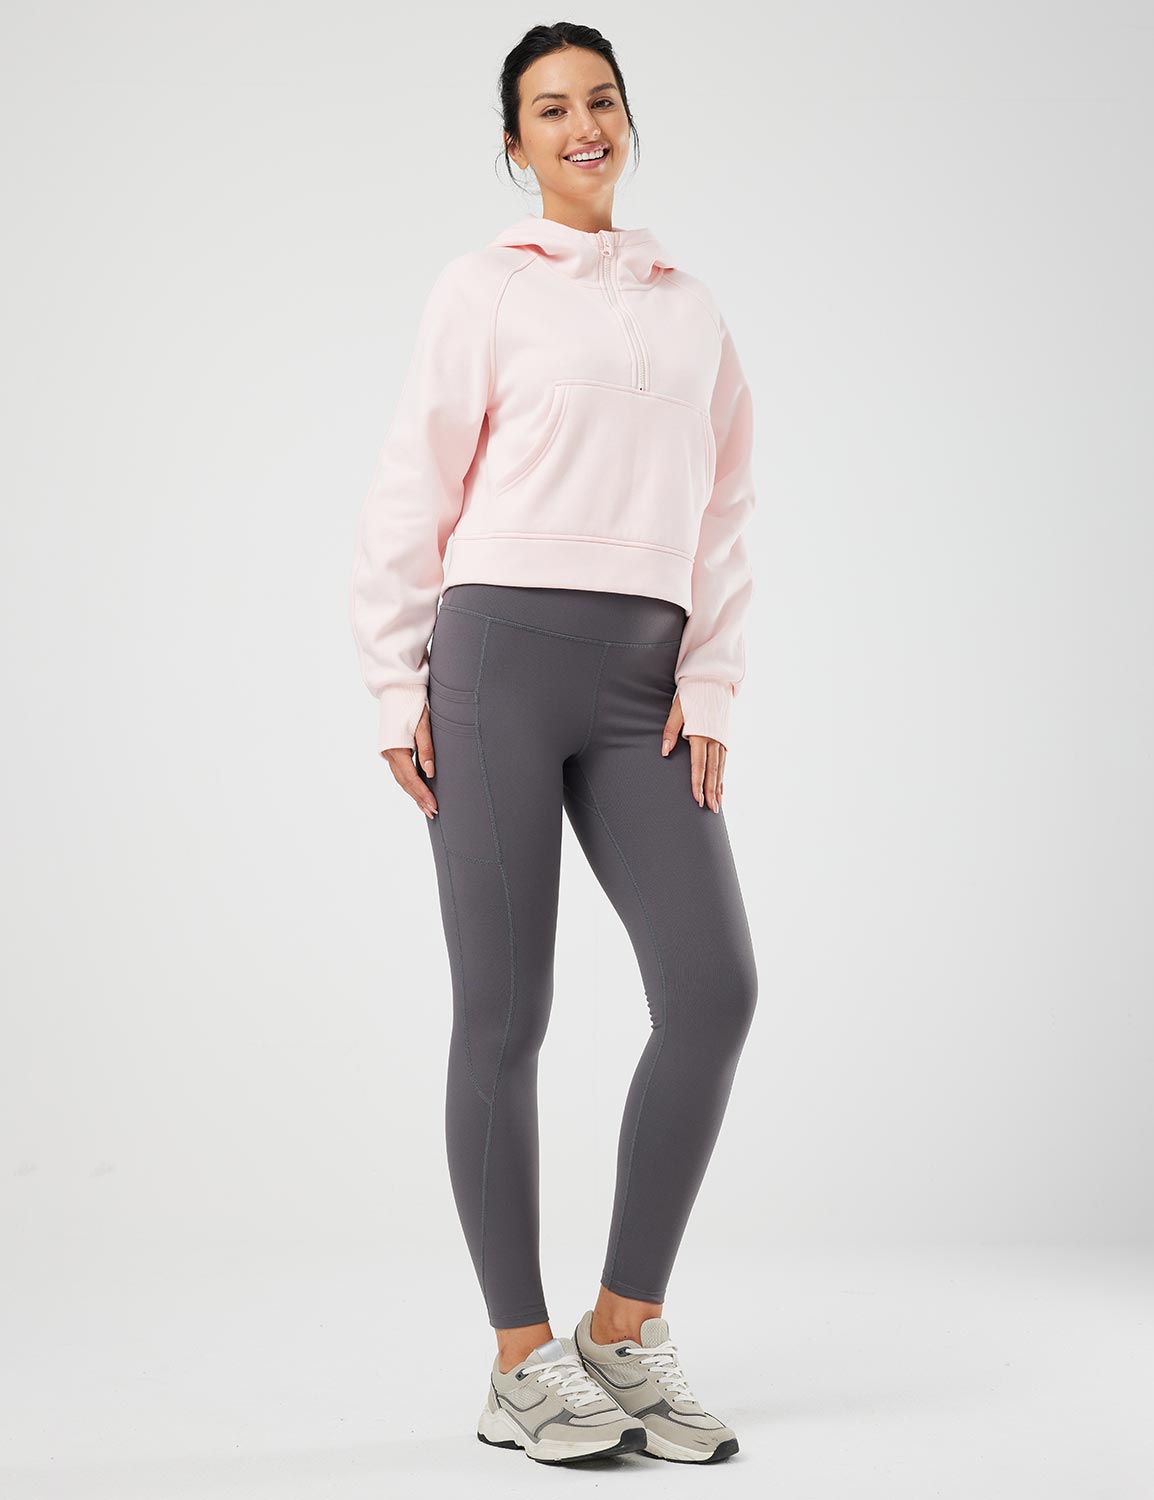 Baleaf Women's Evergreen Cotton Half-Zip Pullover dbd091 Pink Full